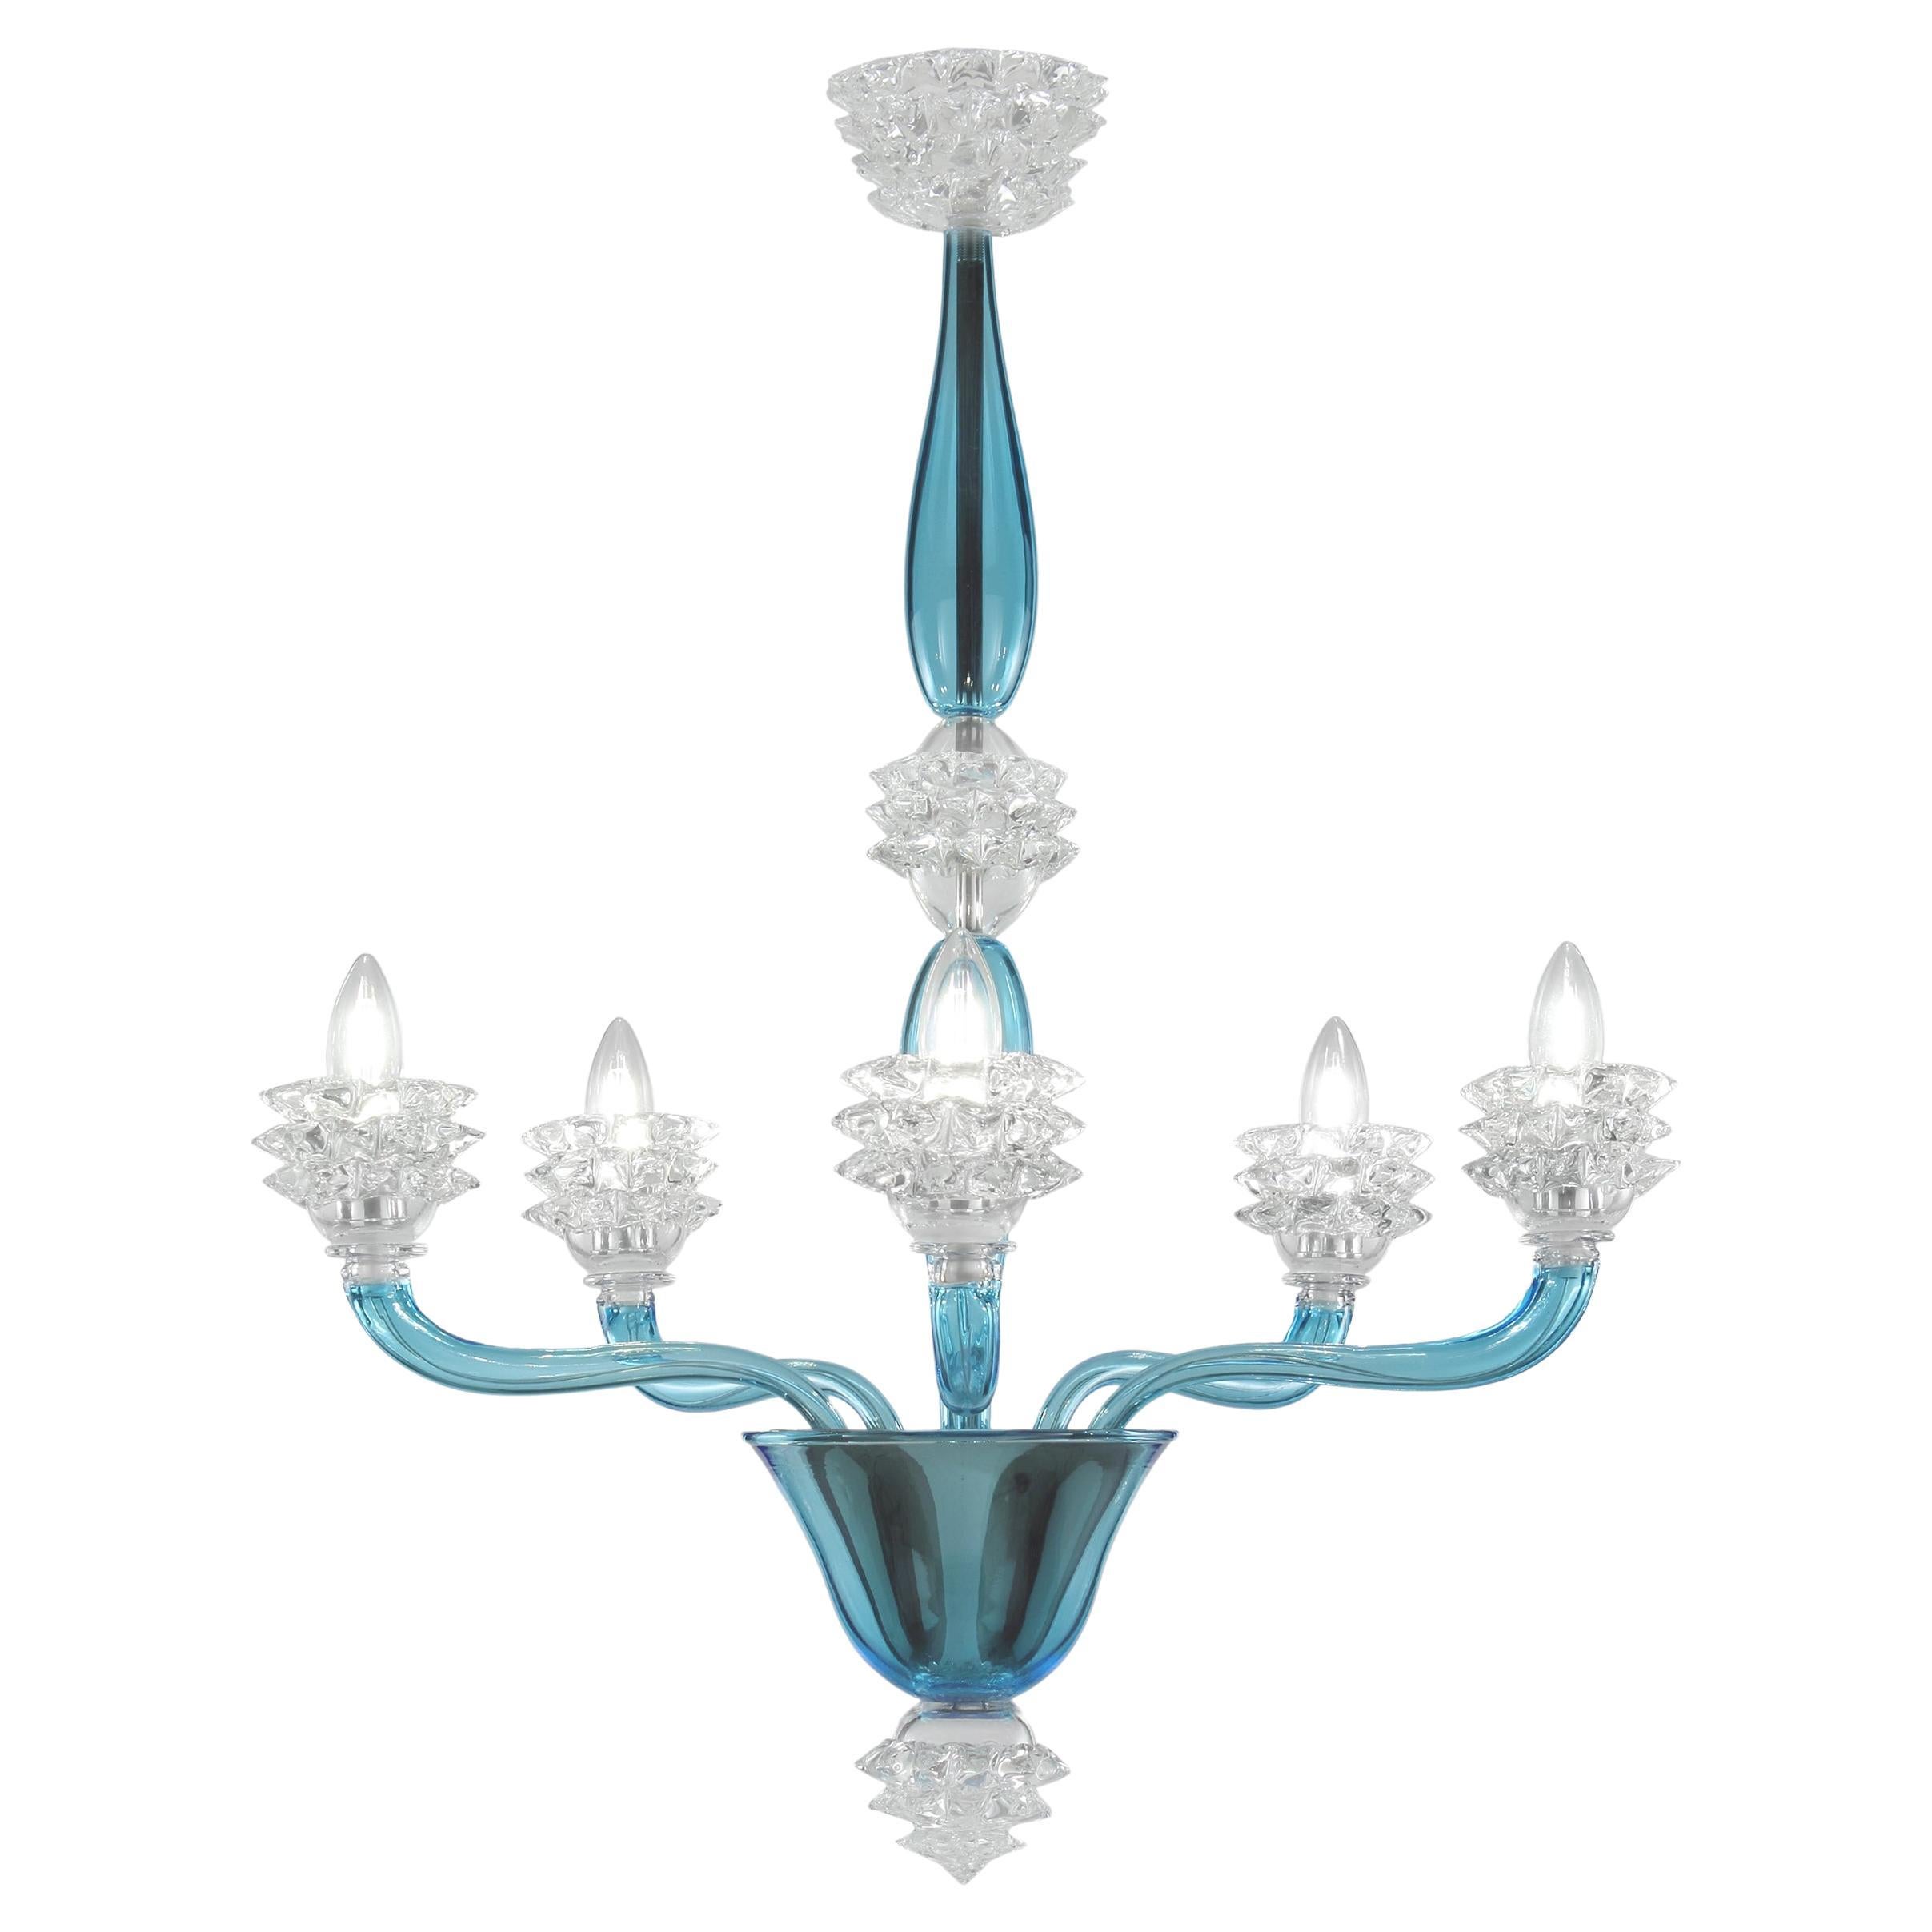 Italienischer Kronleuchter 5 Arme Himmelblau und klar Rostri Murano Glas von Multiforme